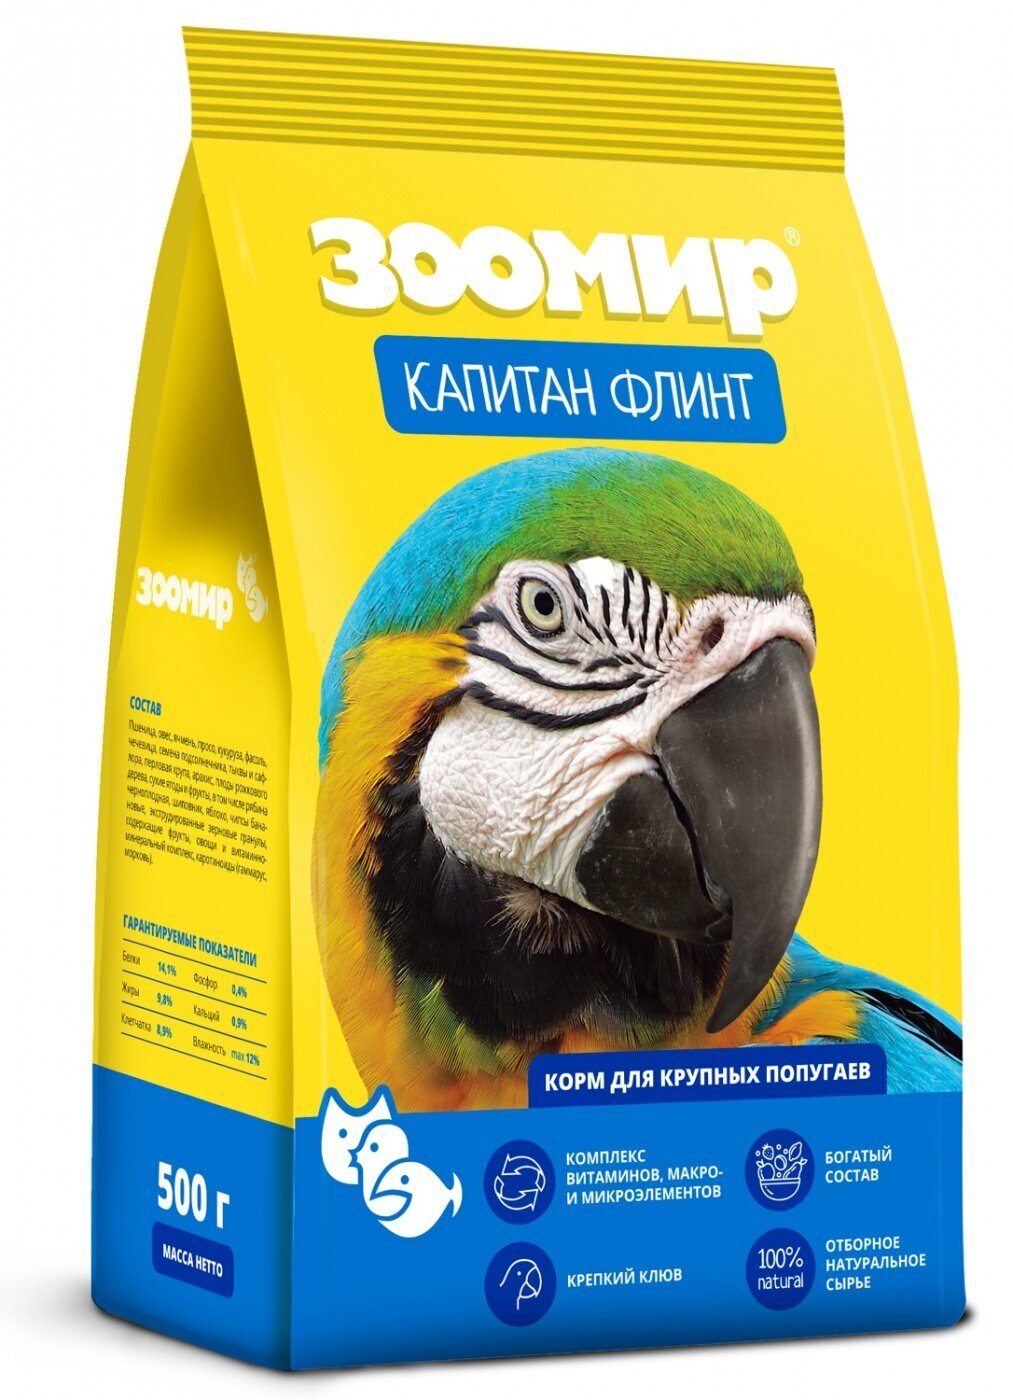 Зоомир Капитан Флинт 500 г корм для крупных и средних попугаев 4 шт